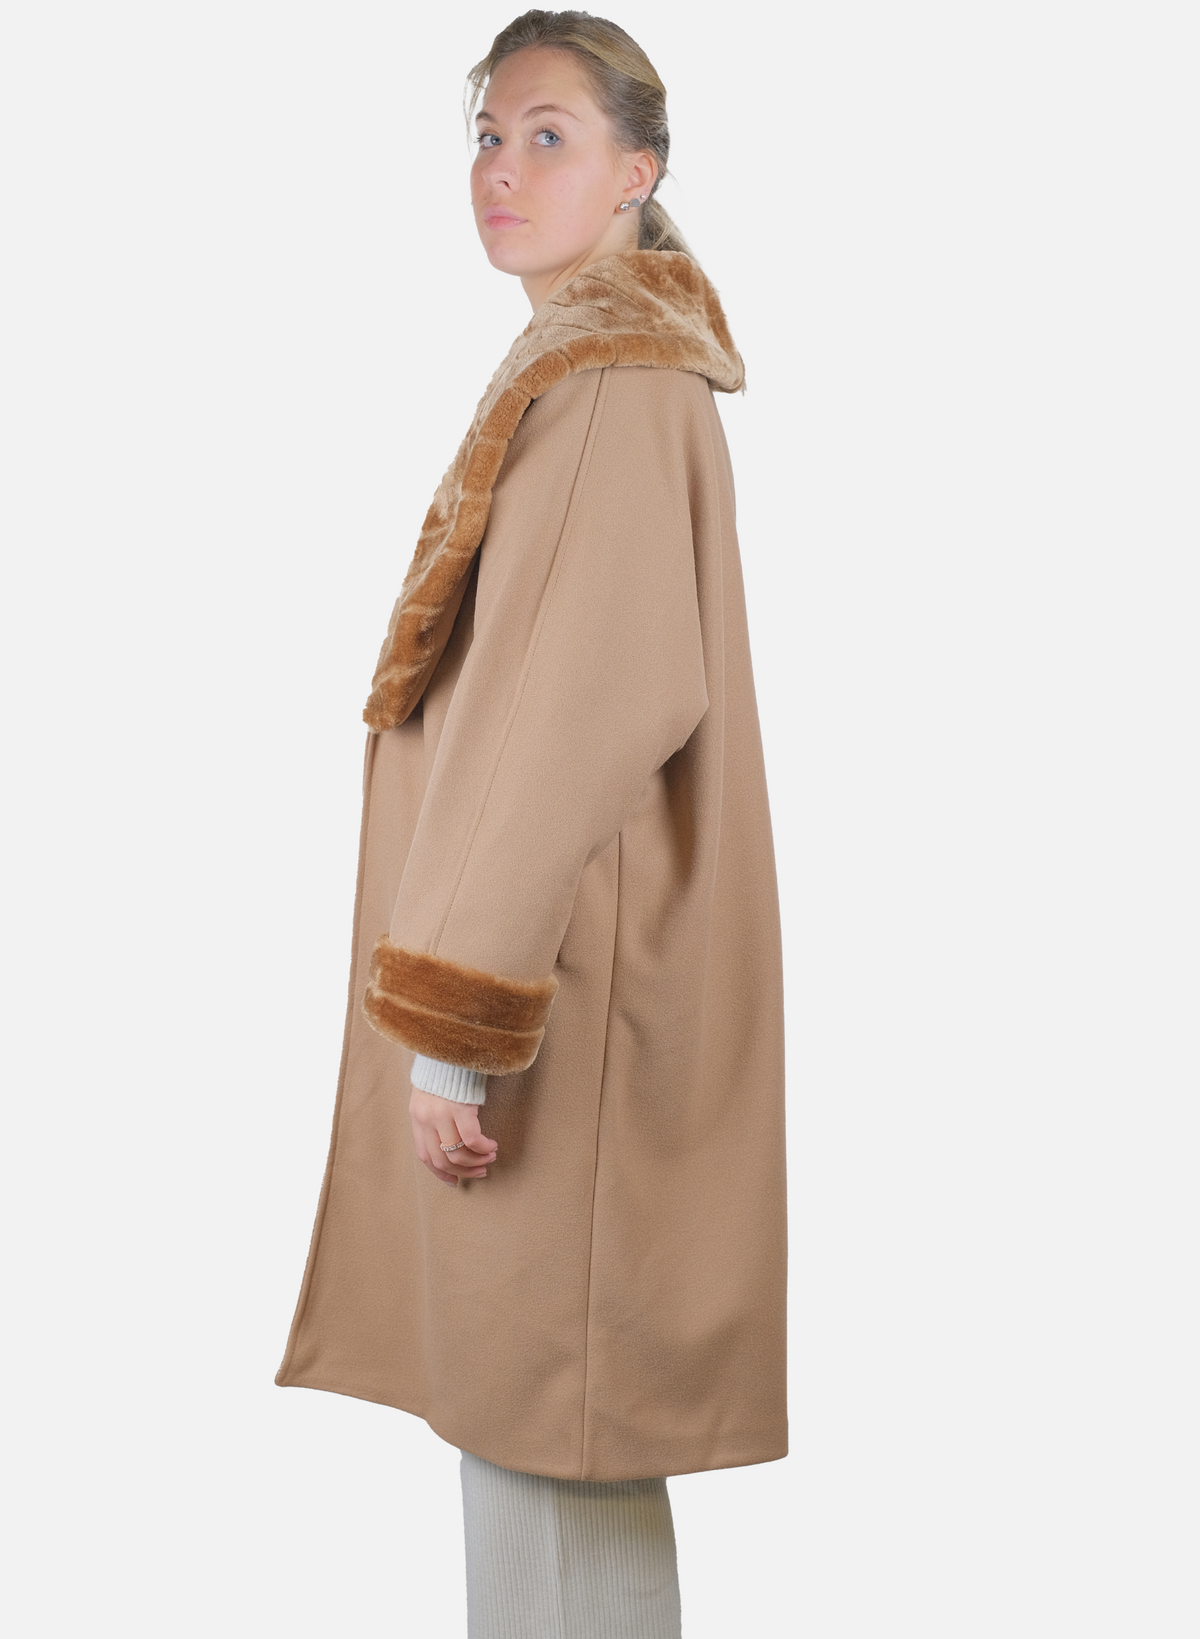 Manteau Femme Classique Avec Empiècements En Fourrure Synthétique 